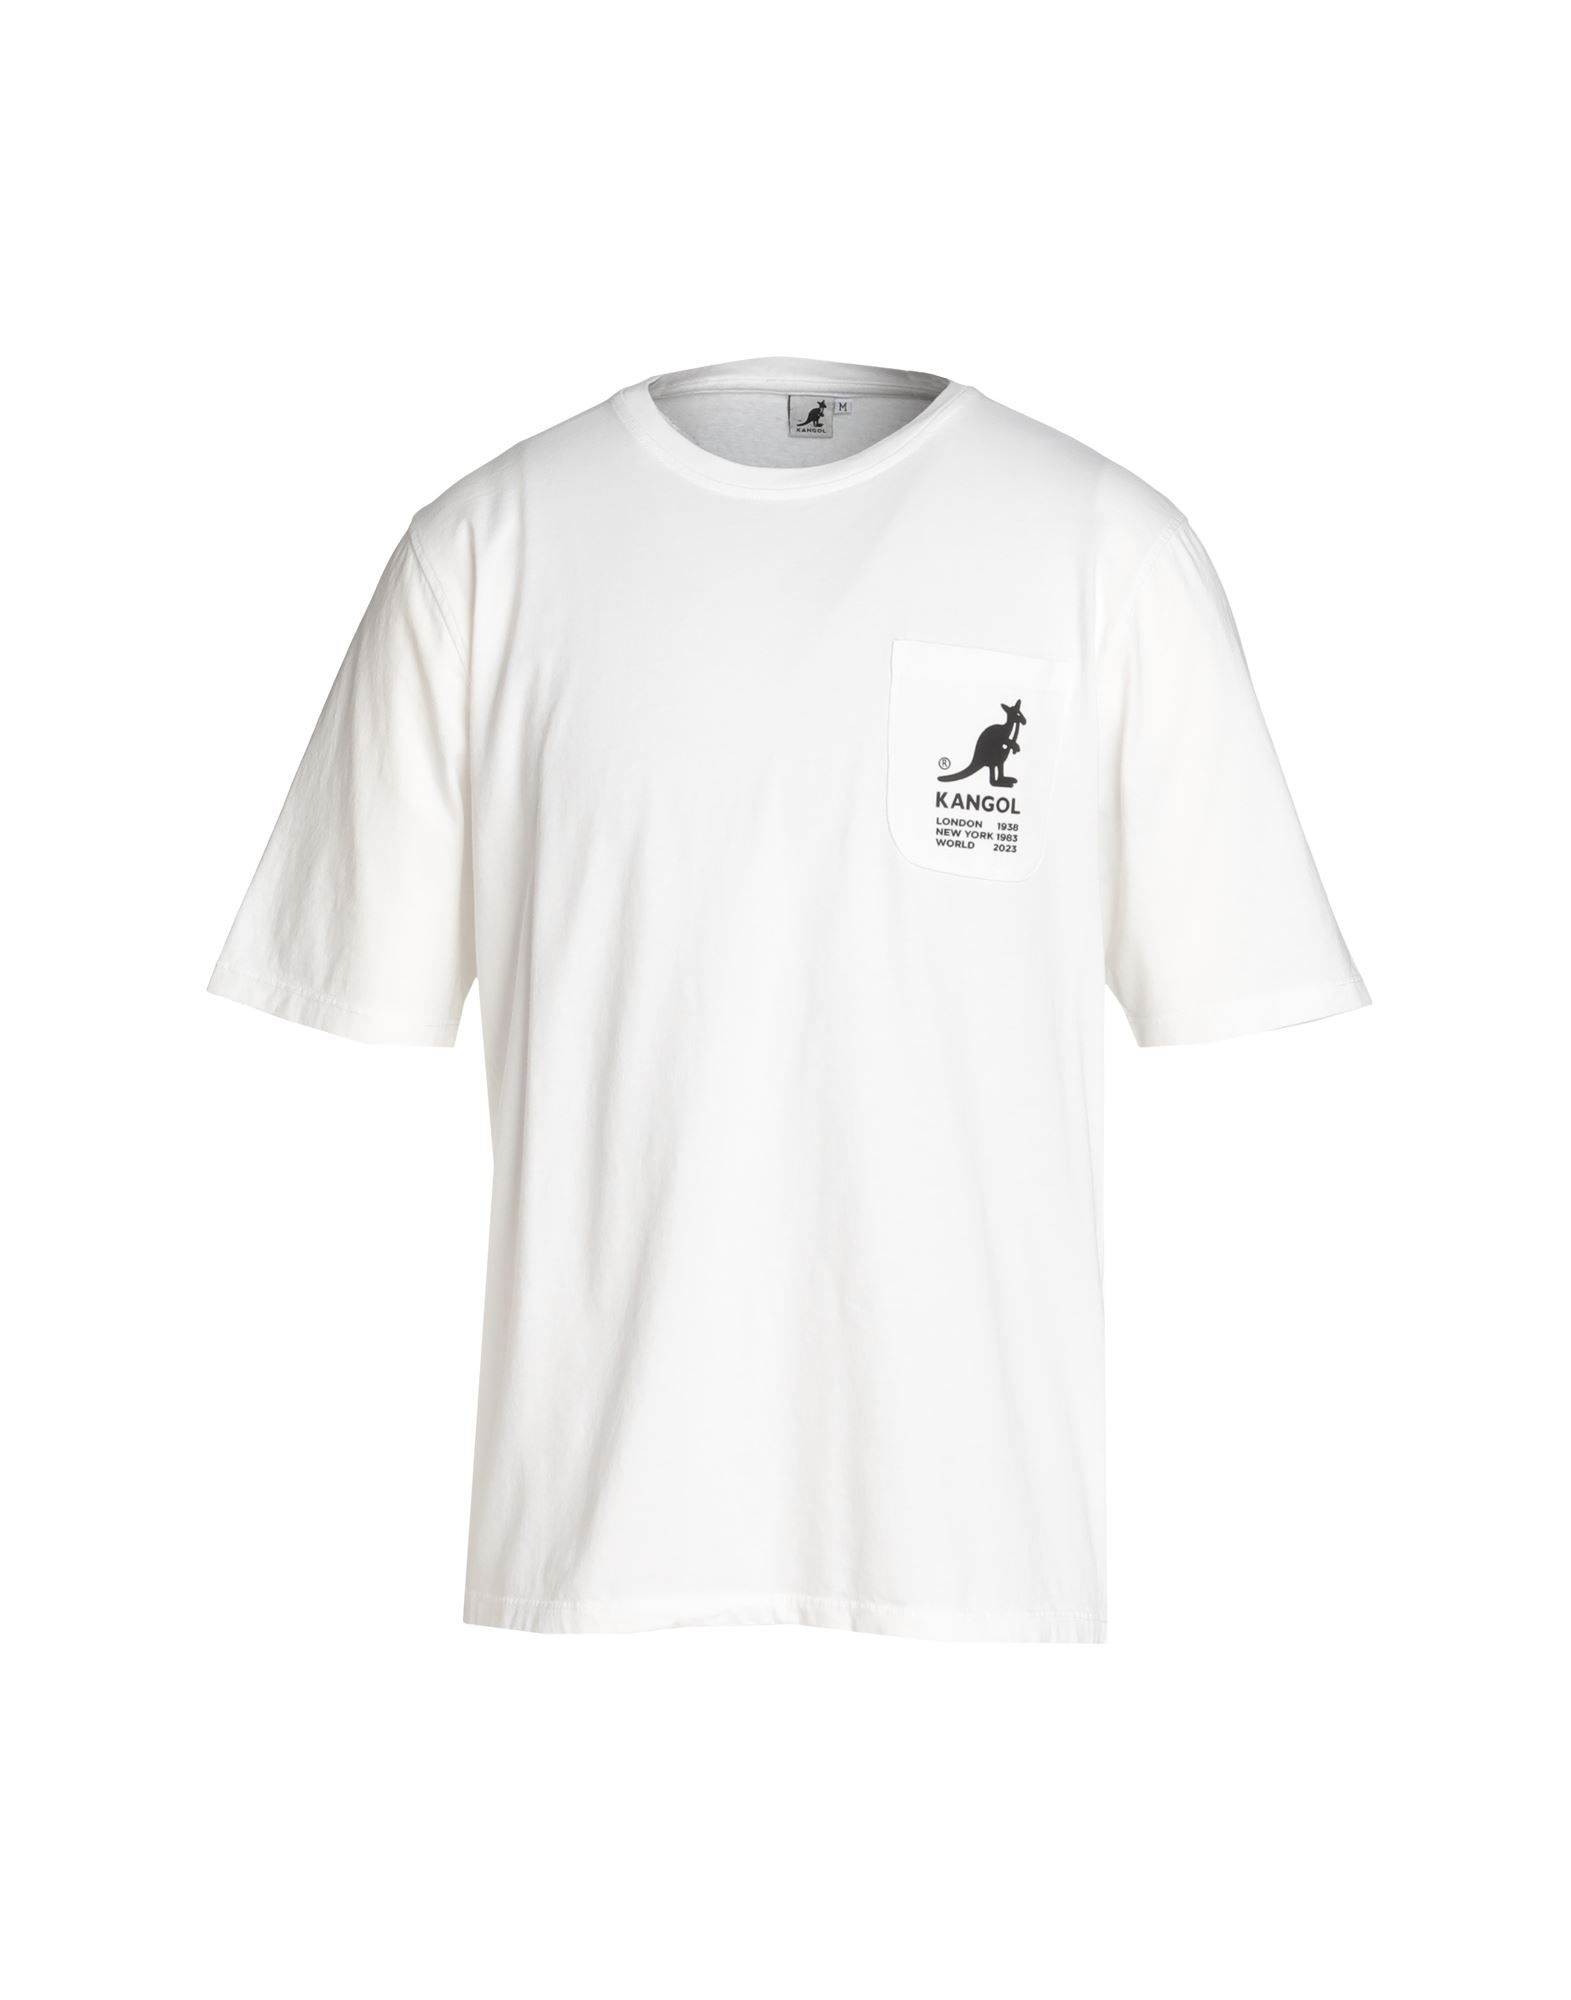 KANGOL T-shirts Herren Weiß von KANGOL